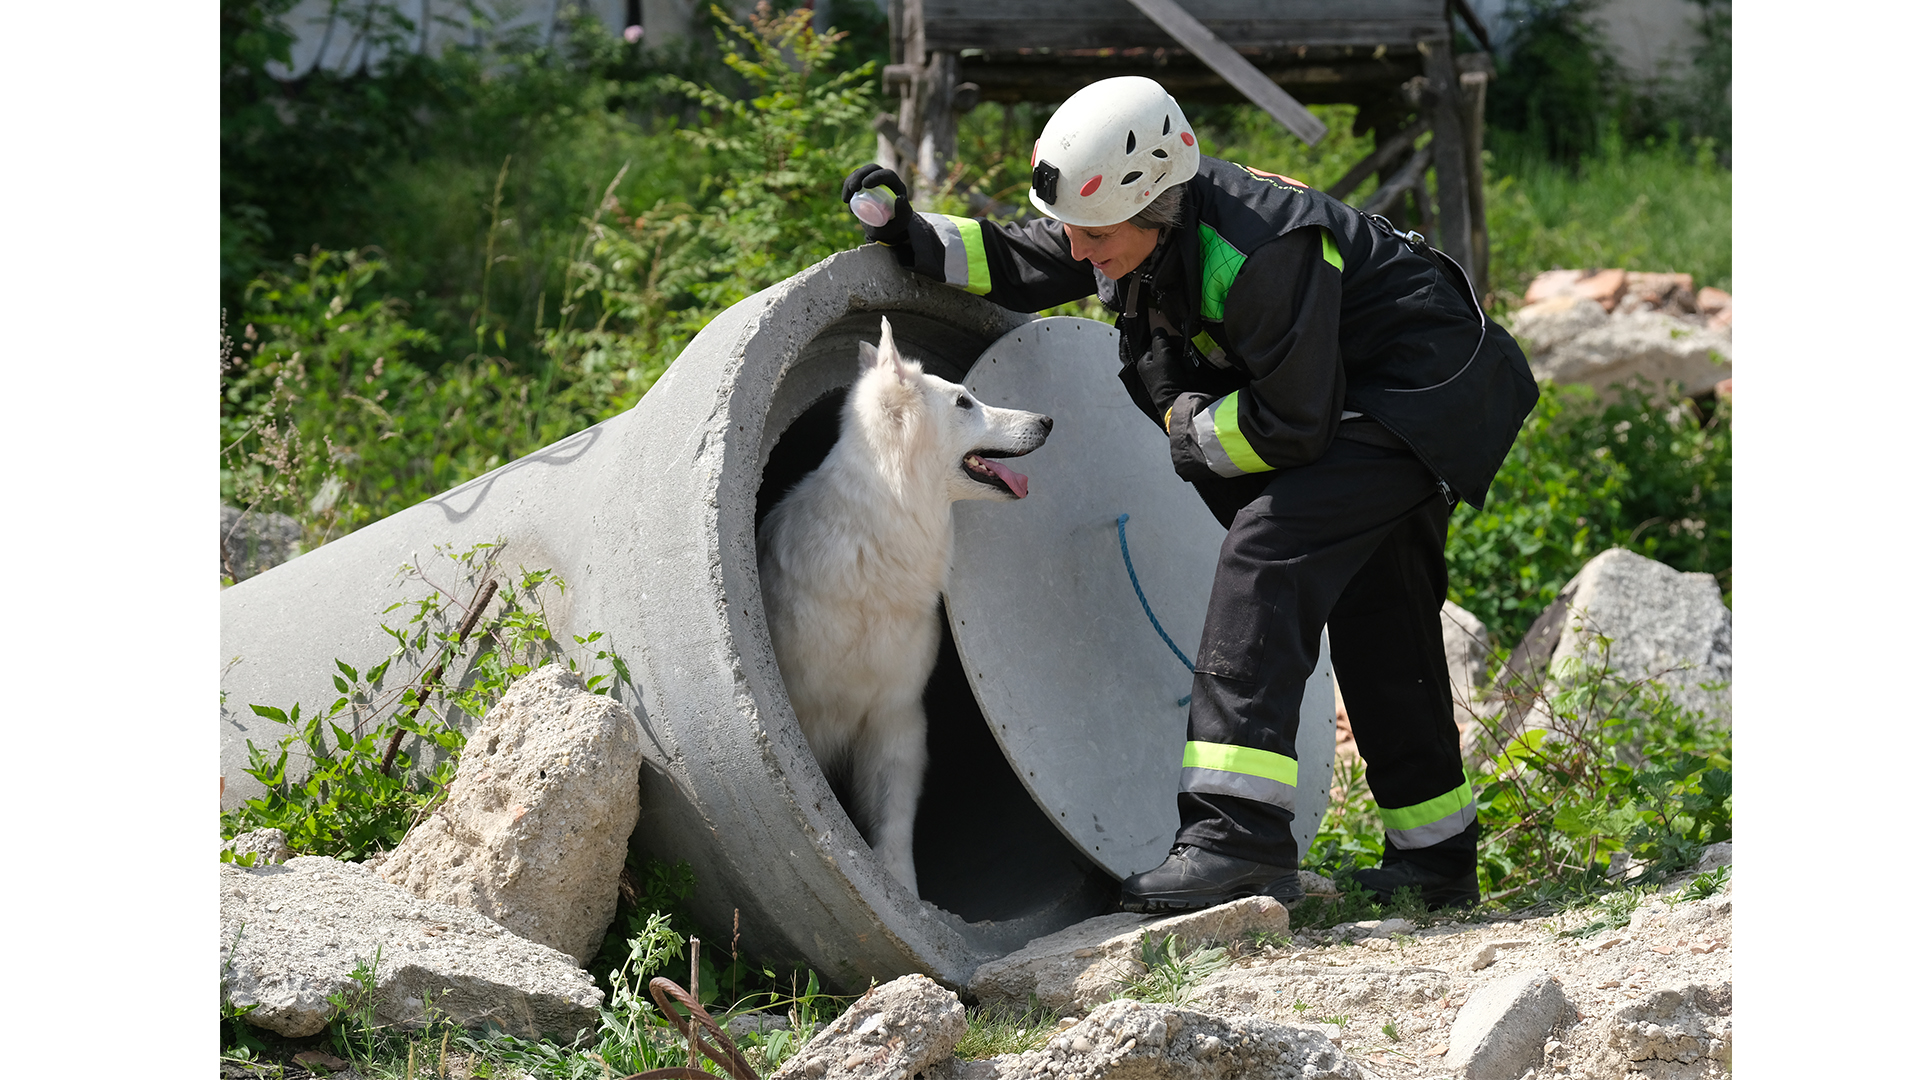 állati nyomozó demi kutyus emberéletek hiperaktív keresőkutya keresőkutyás szolgálat alapítvány kovács tímea mentőkutya-kiképző munkakutyás sportok nyomkövetés nyomkövető svájci fehér juhászkutya tréning